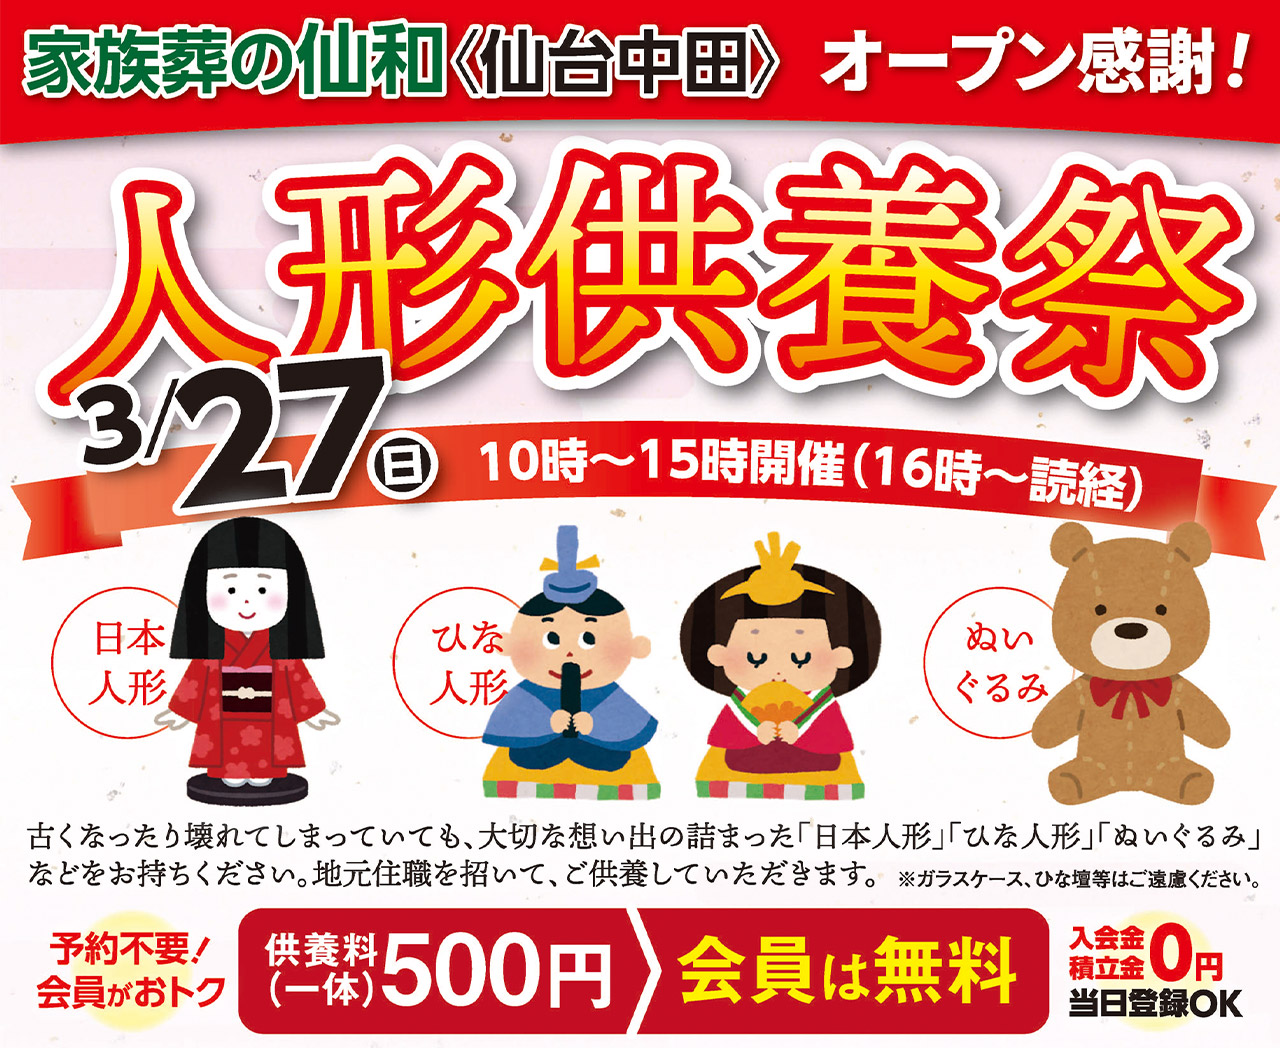 3/27(日)仙台中田ホールで 人形供養祭を開催いたします！のイメージ画像